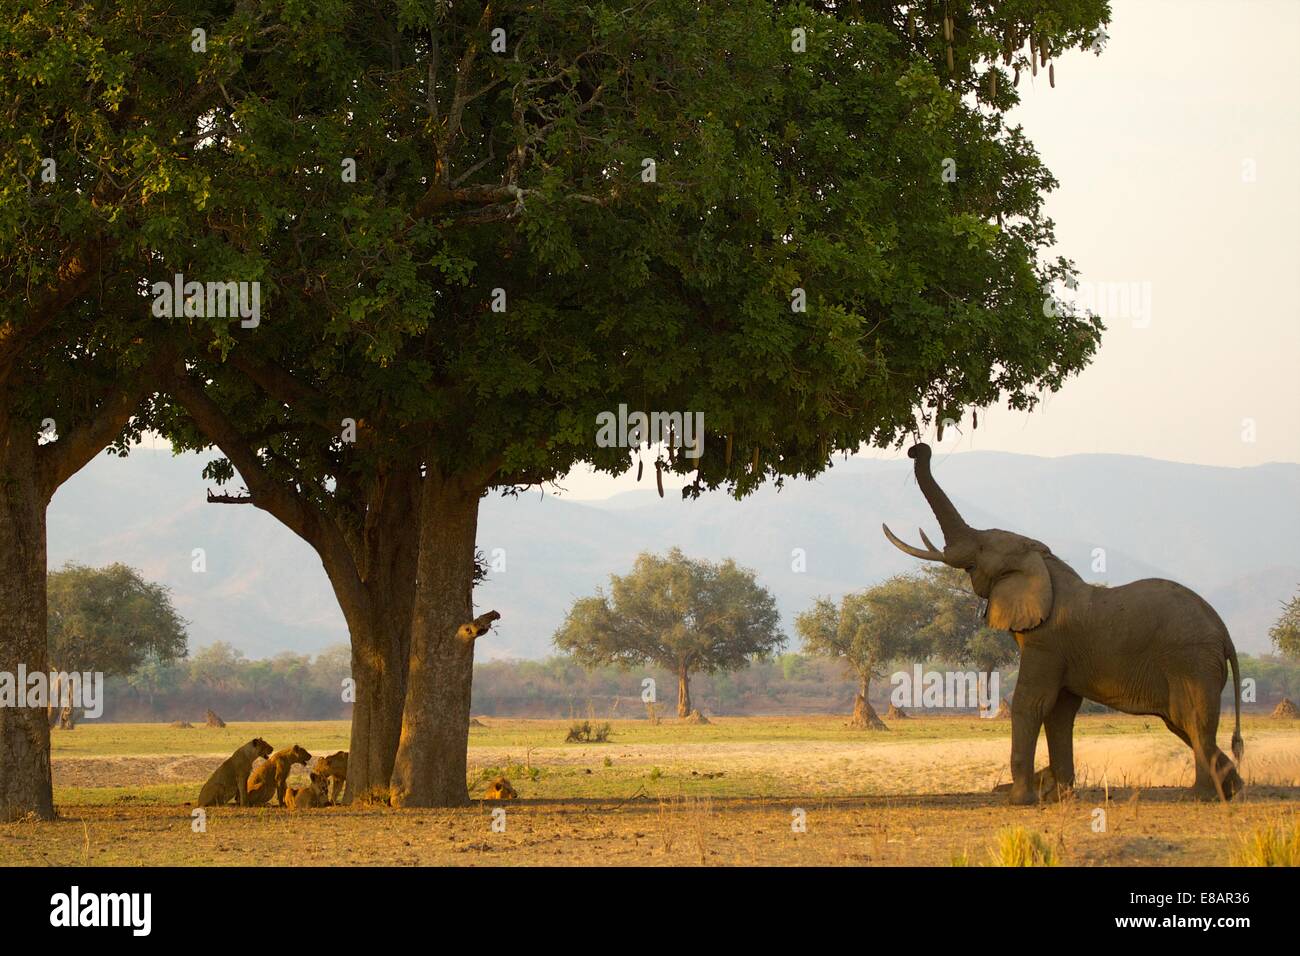 Eat from trees. Слон ест листву с дерева. Слоны и деревья Африки. Слон несет дерево Африканский. Слон вырывает дерево.